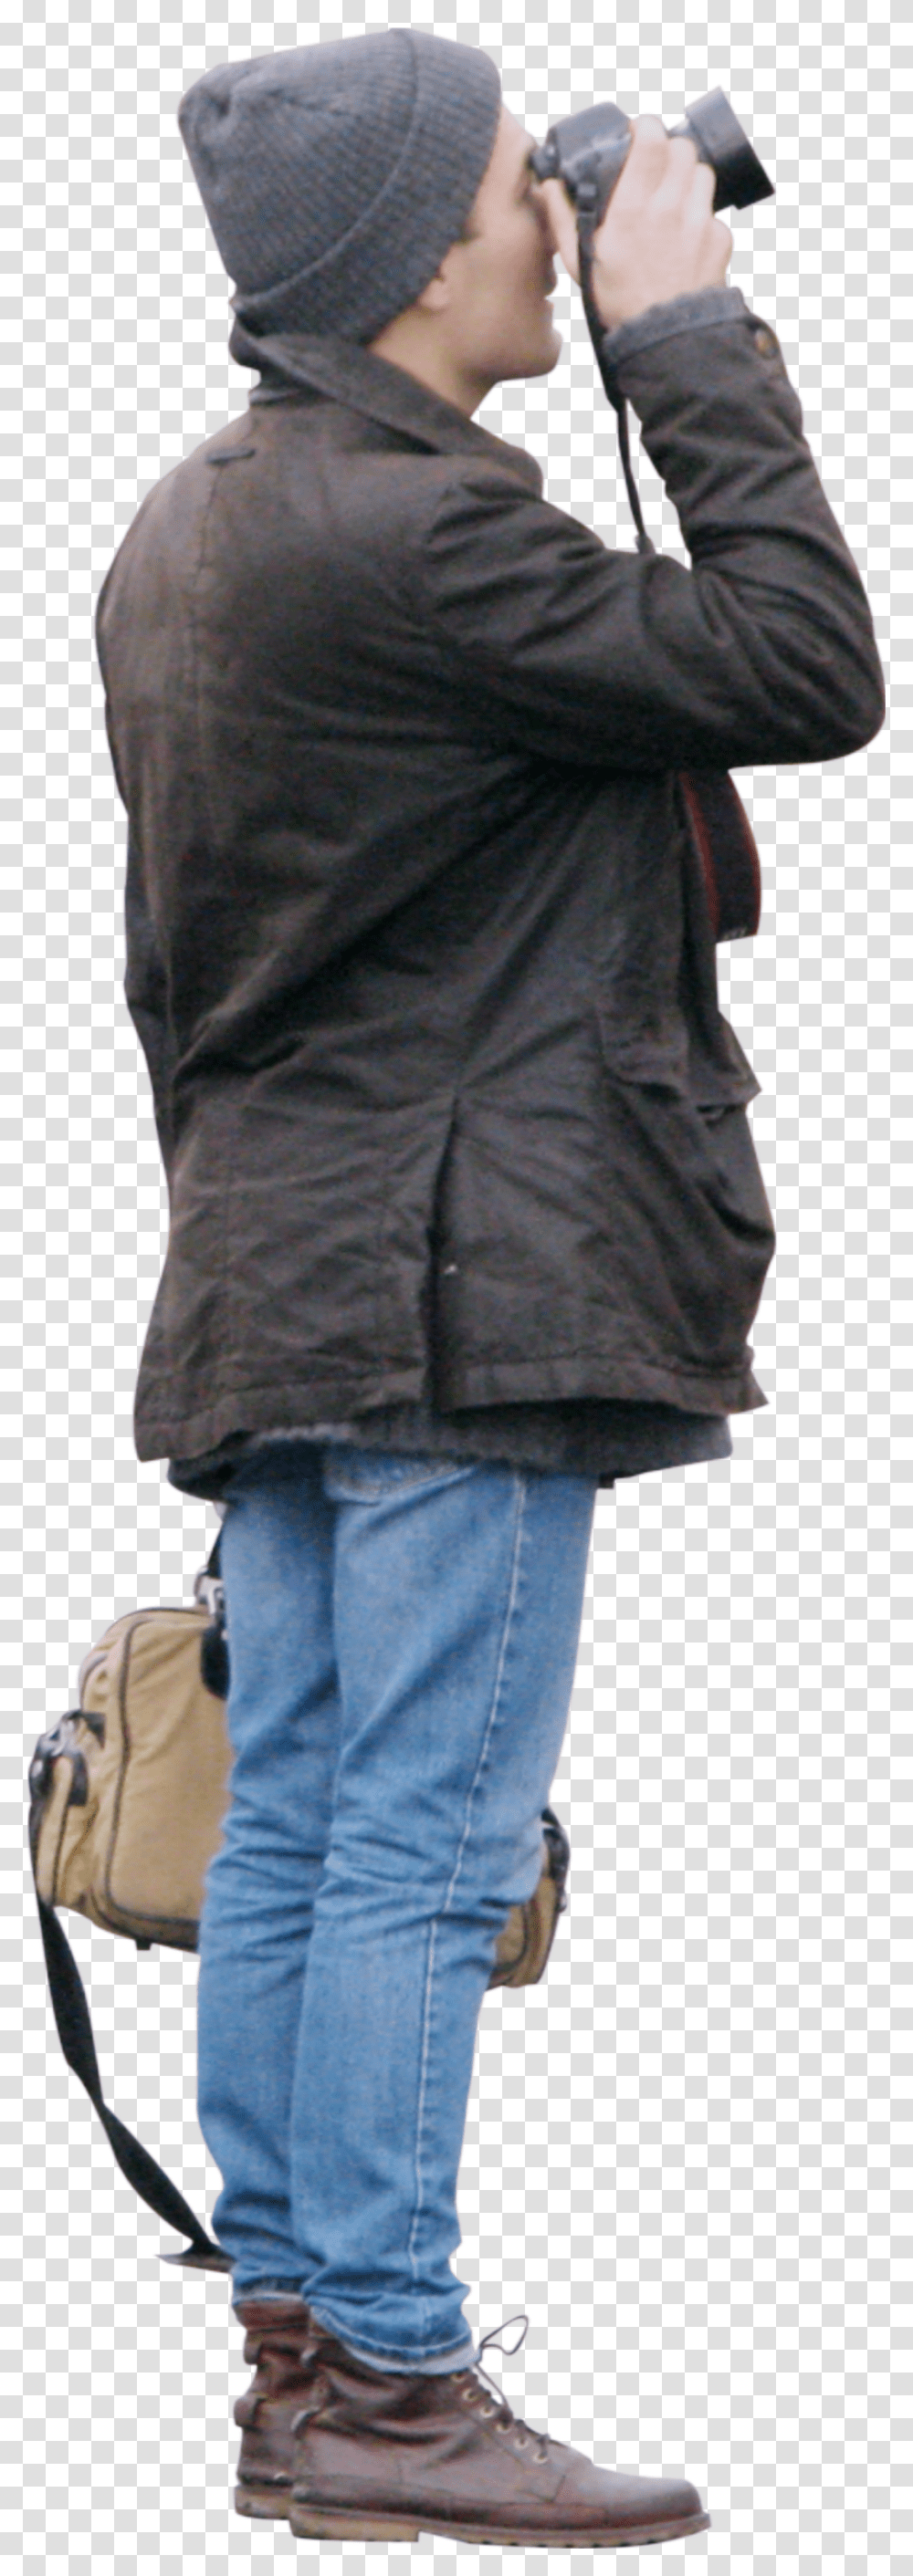 Man Cutout Human Figures, Apparel, Person, Vest Transparent Png